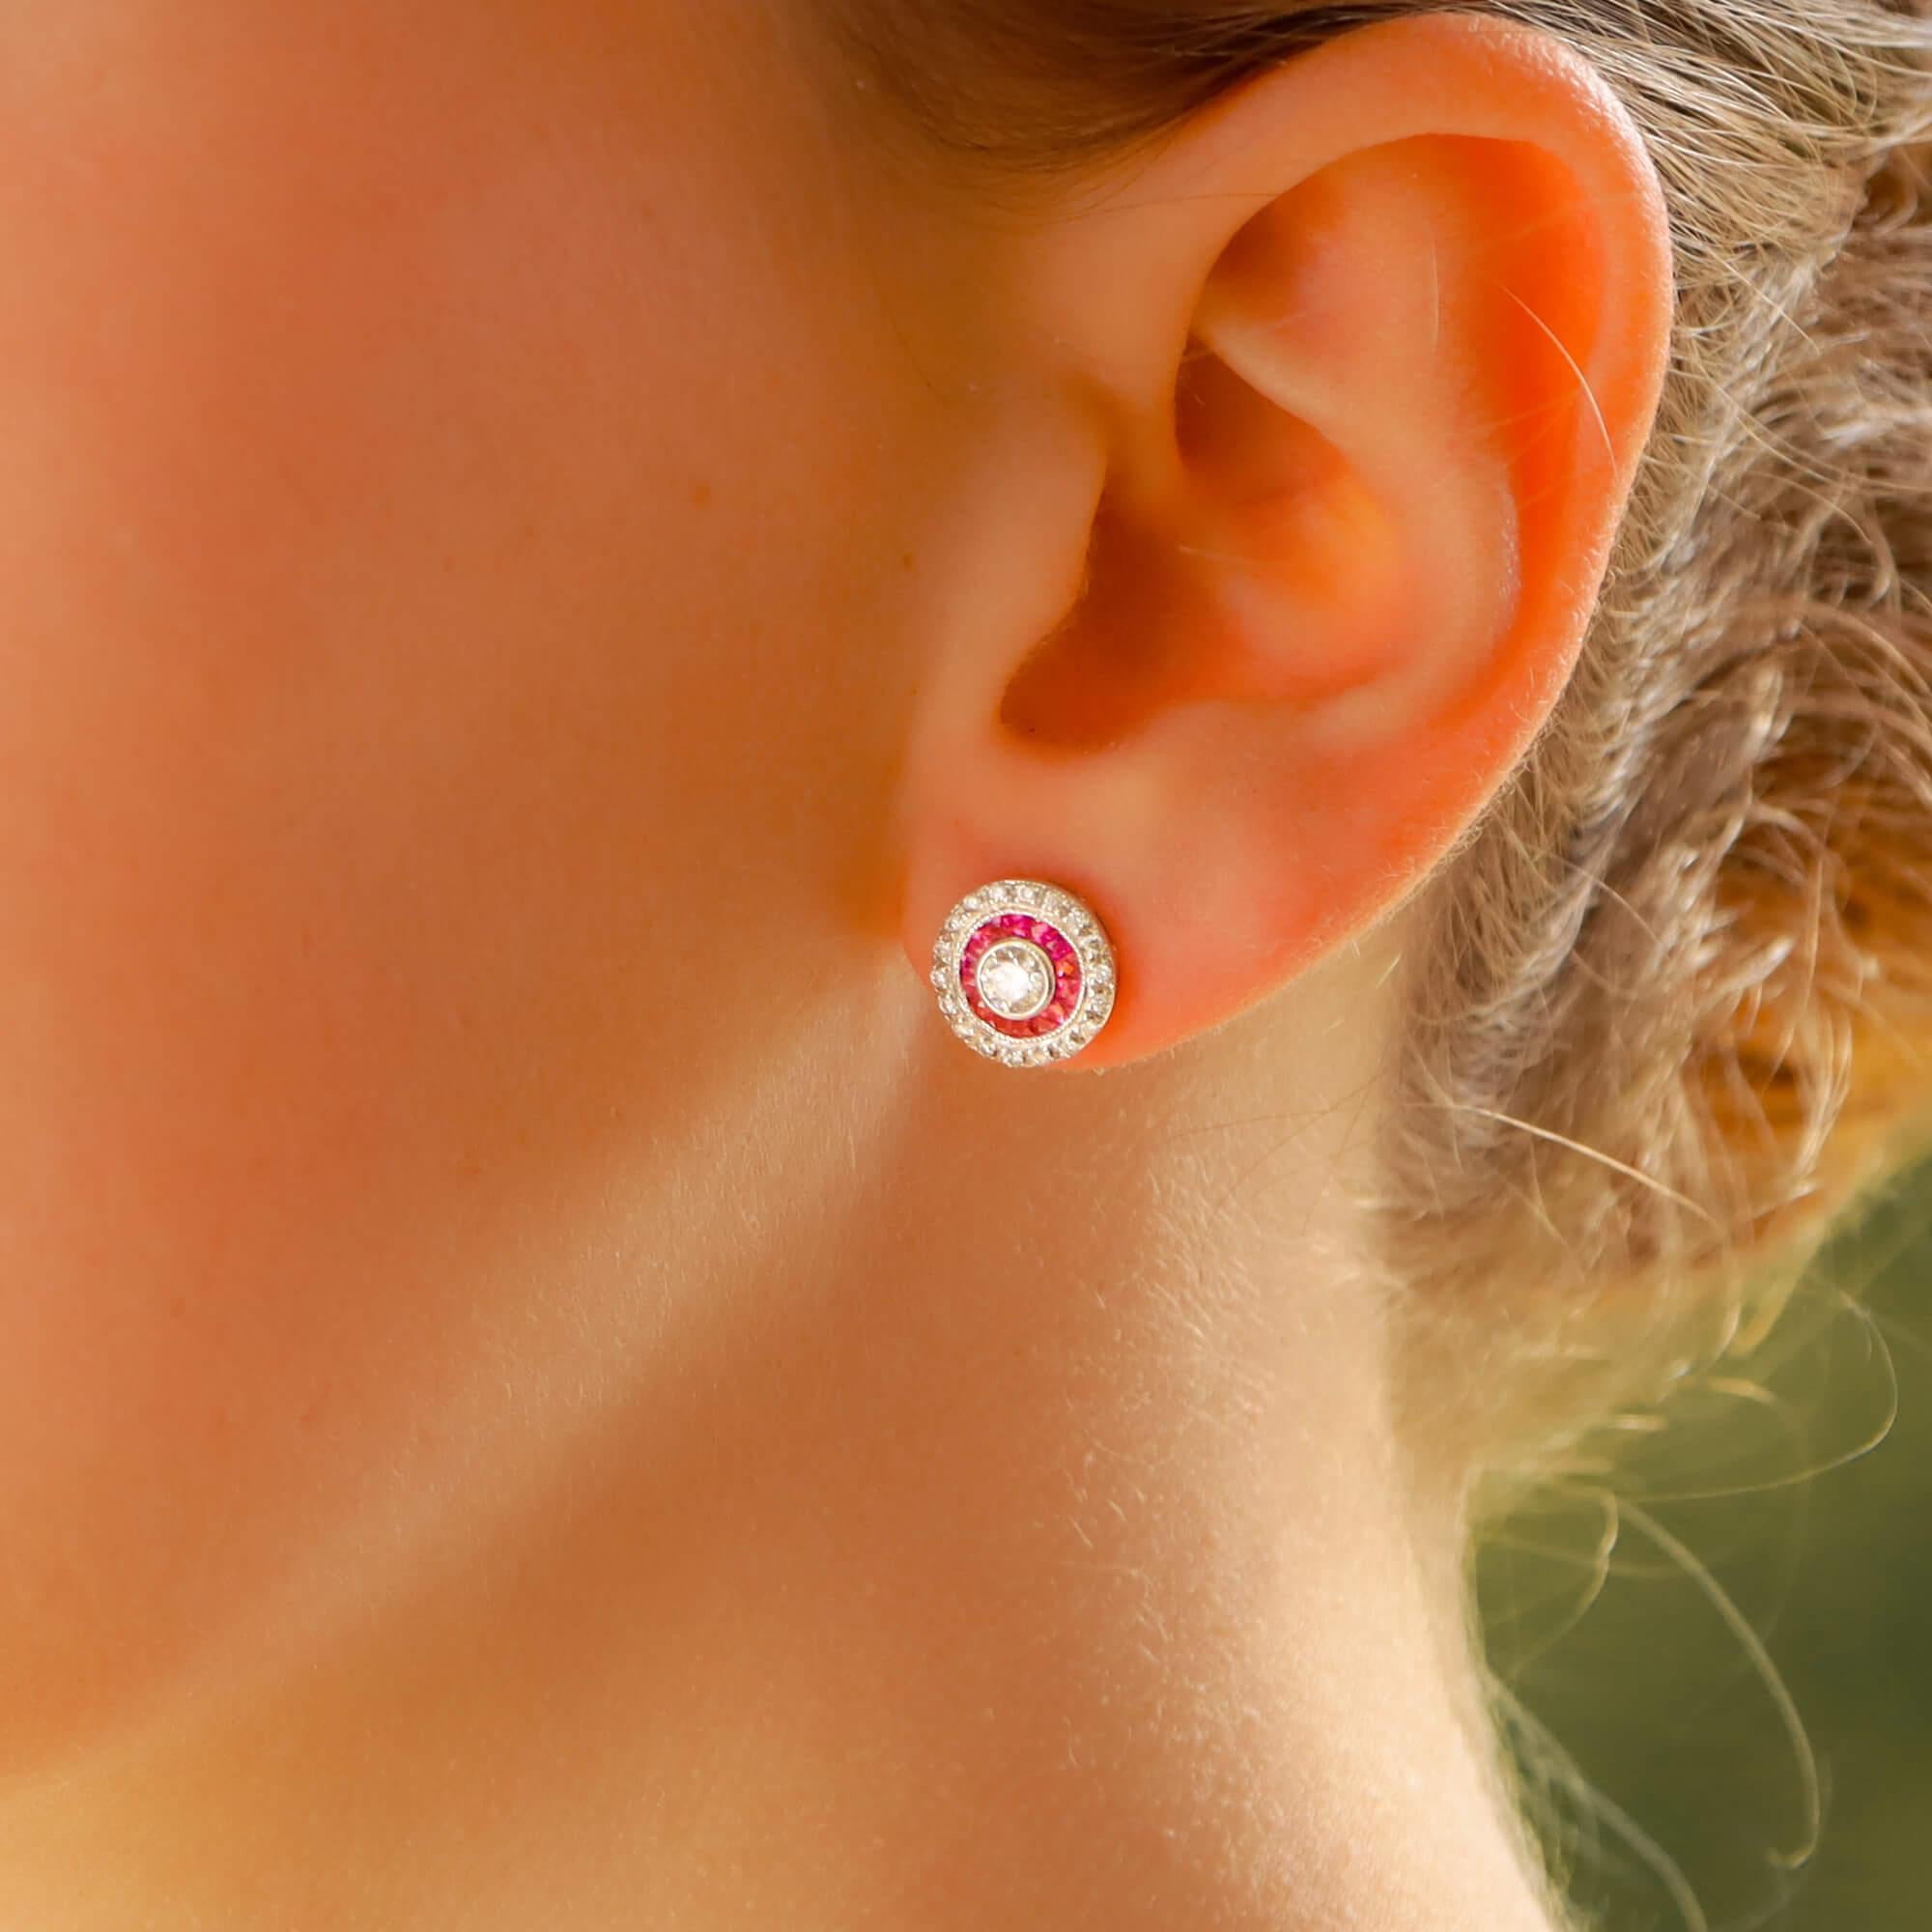 target earrings